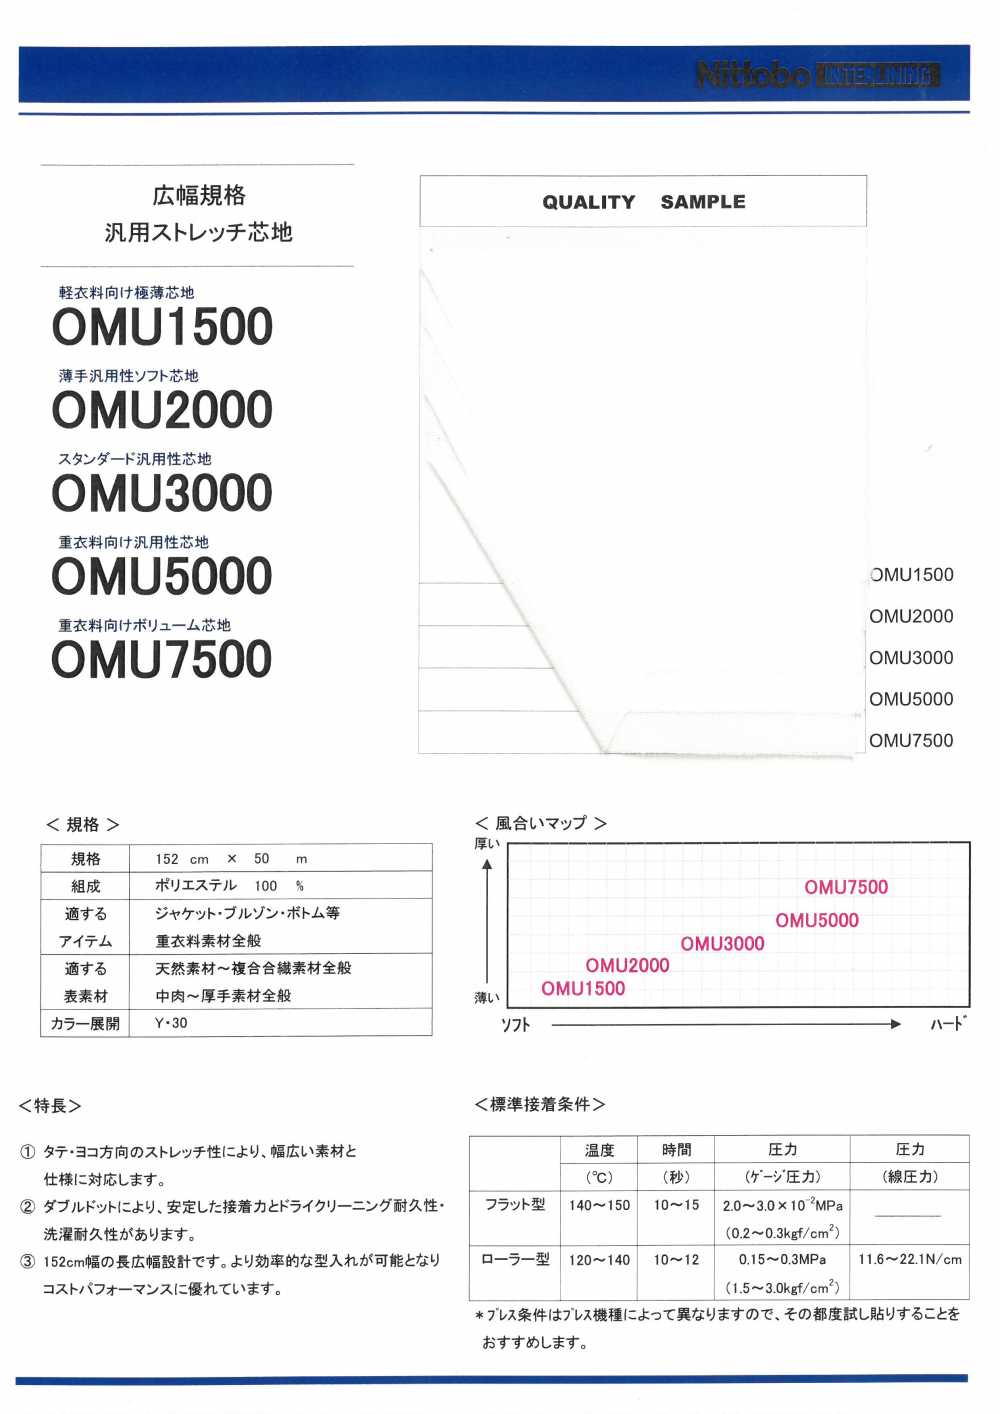 OMU2000 薄型多功能柔软衬布 日东纺绩